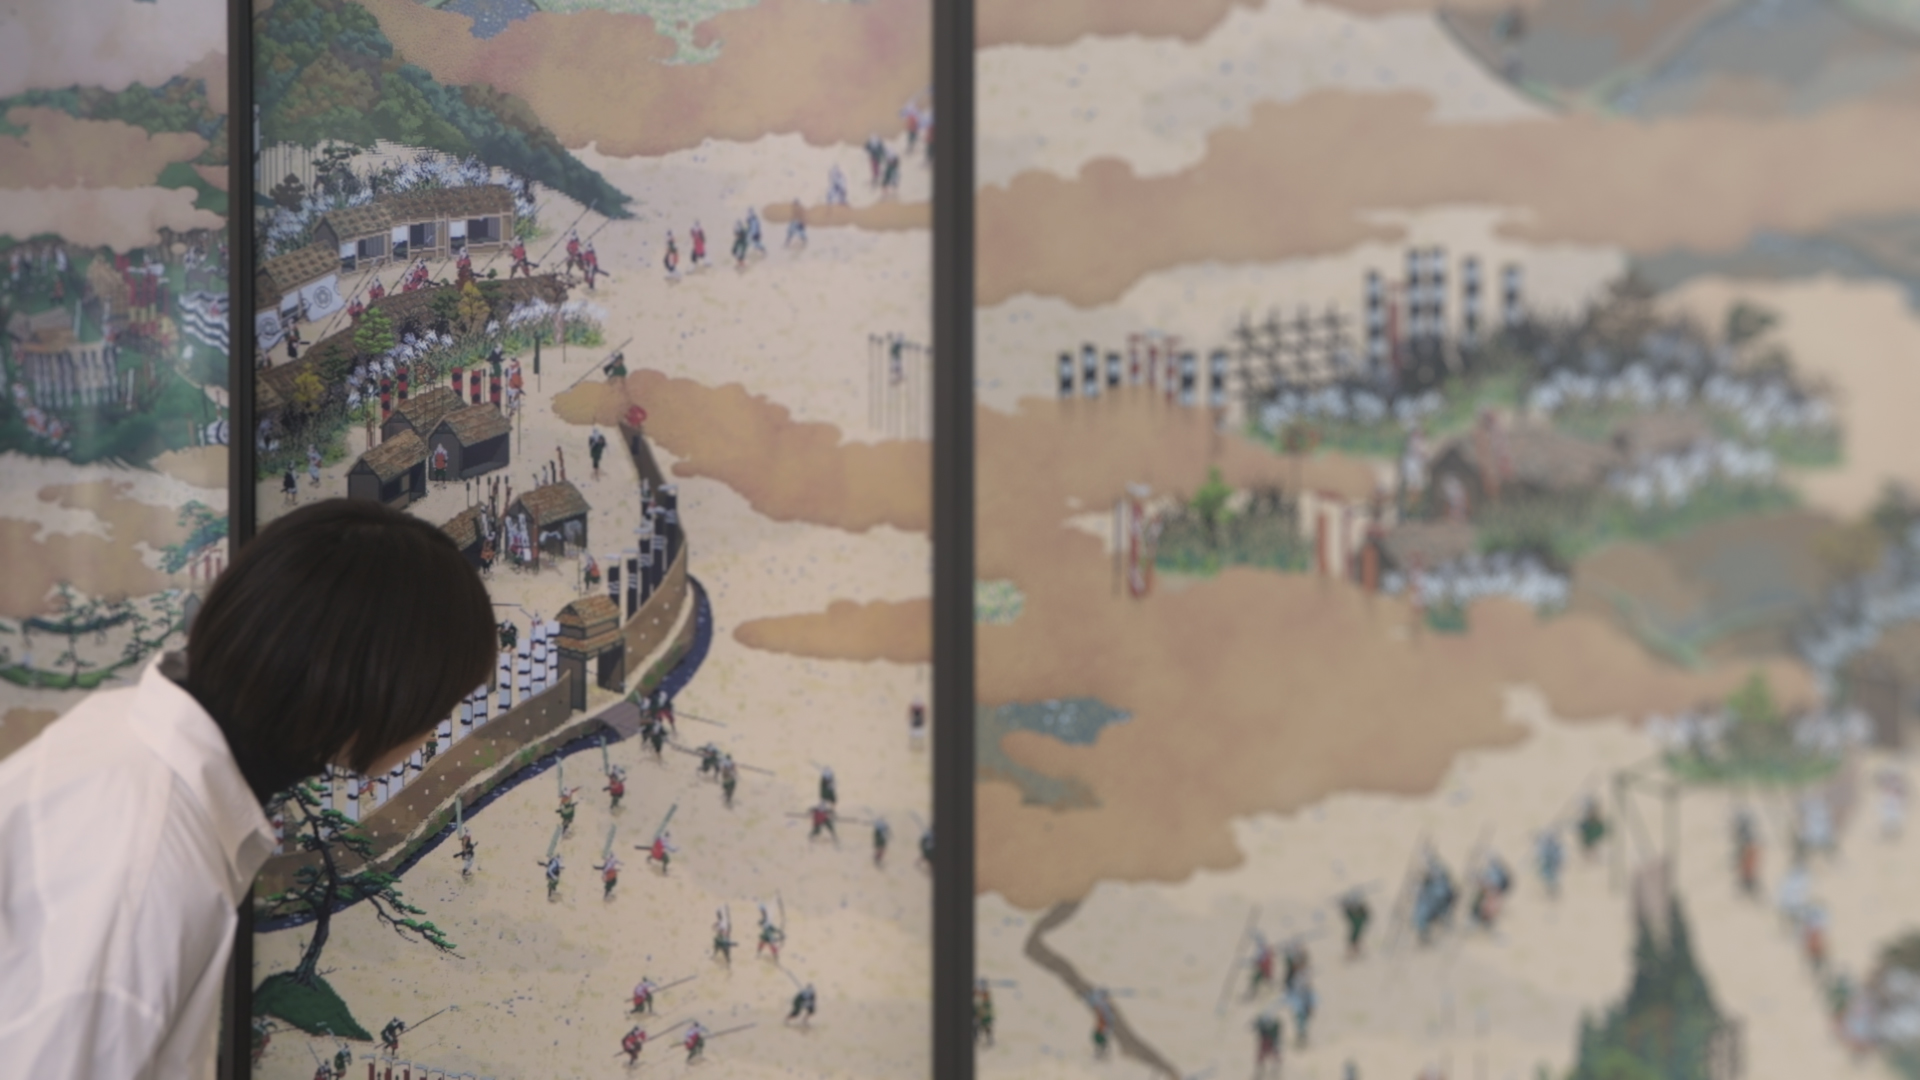 関ケ原山水図屏風 / Sekigahara-Sansui-zu-Byobu (Folding Screen of Painted Sekigahara Landscapes)